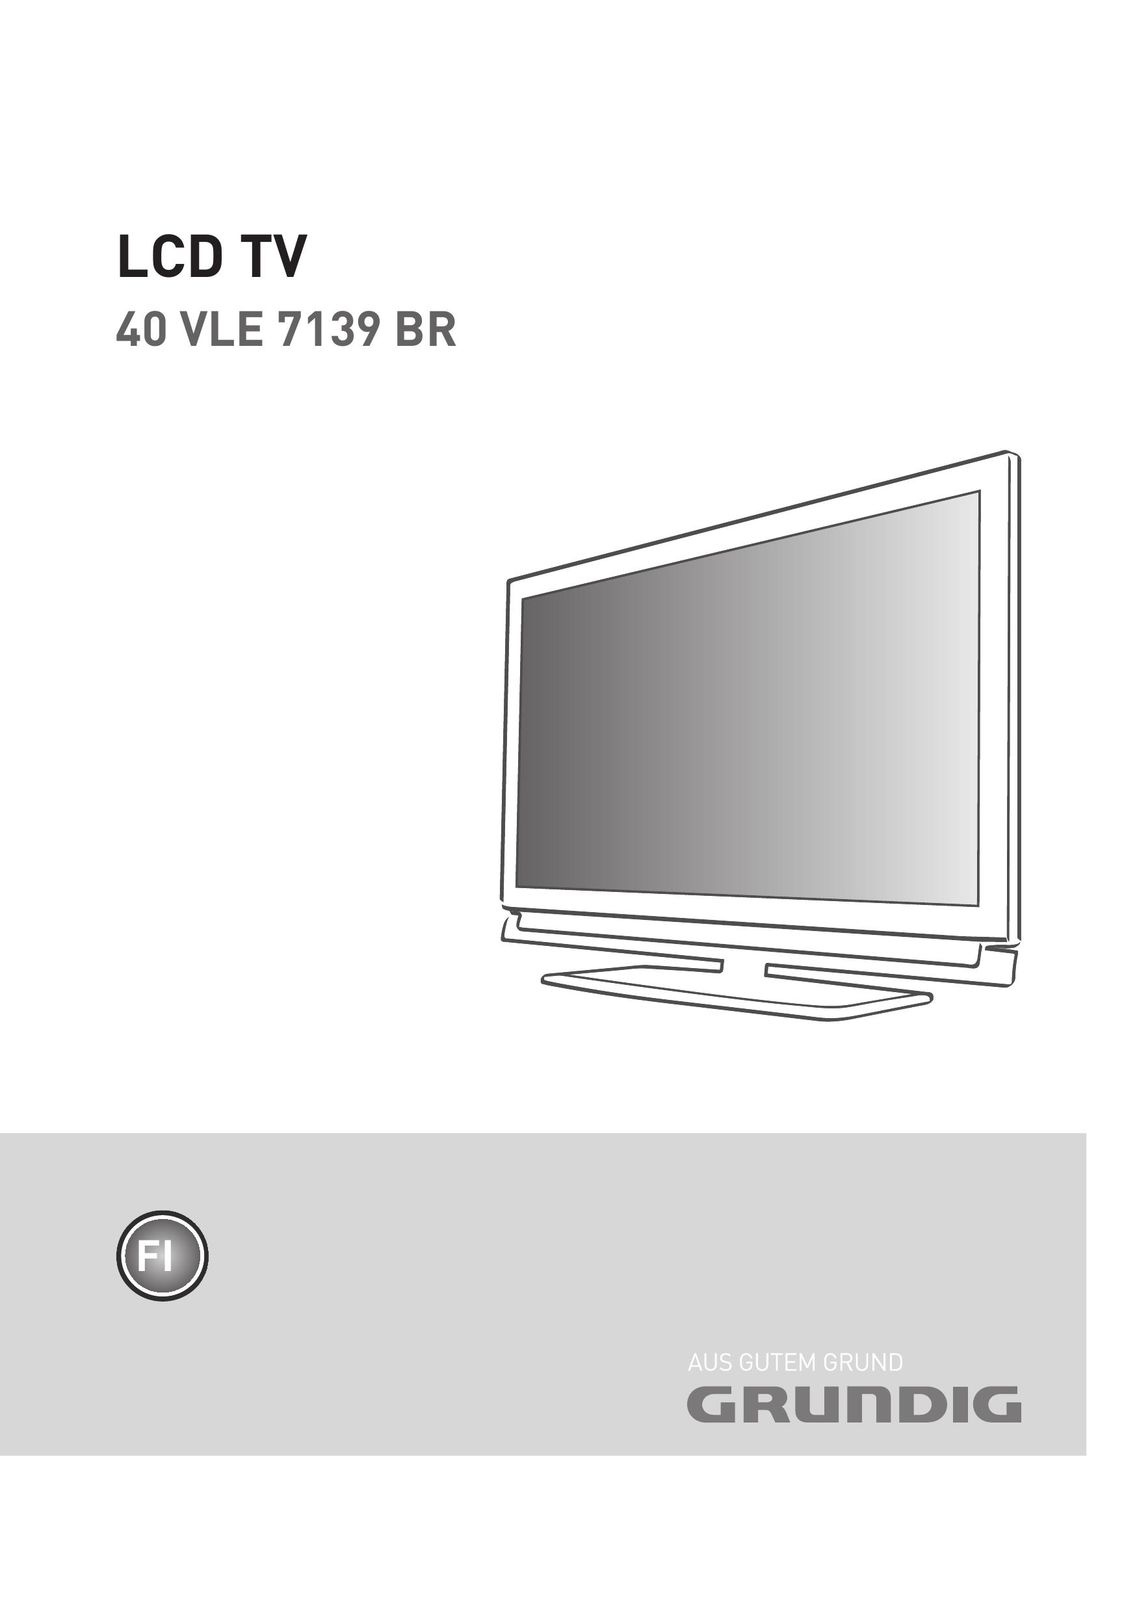 Grundig 40 VLE 7139 BR Flat Panel Television User Manual